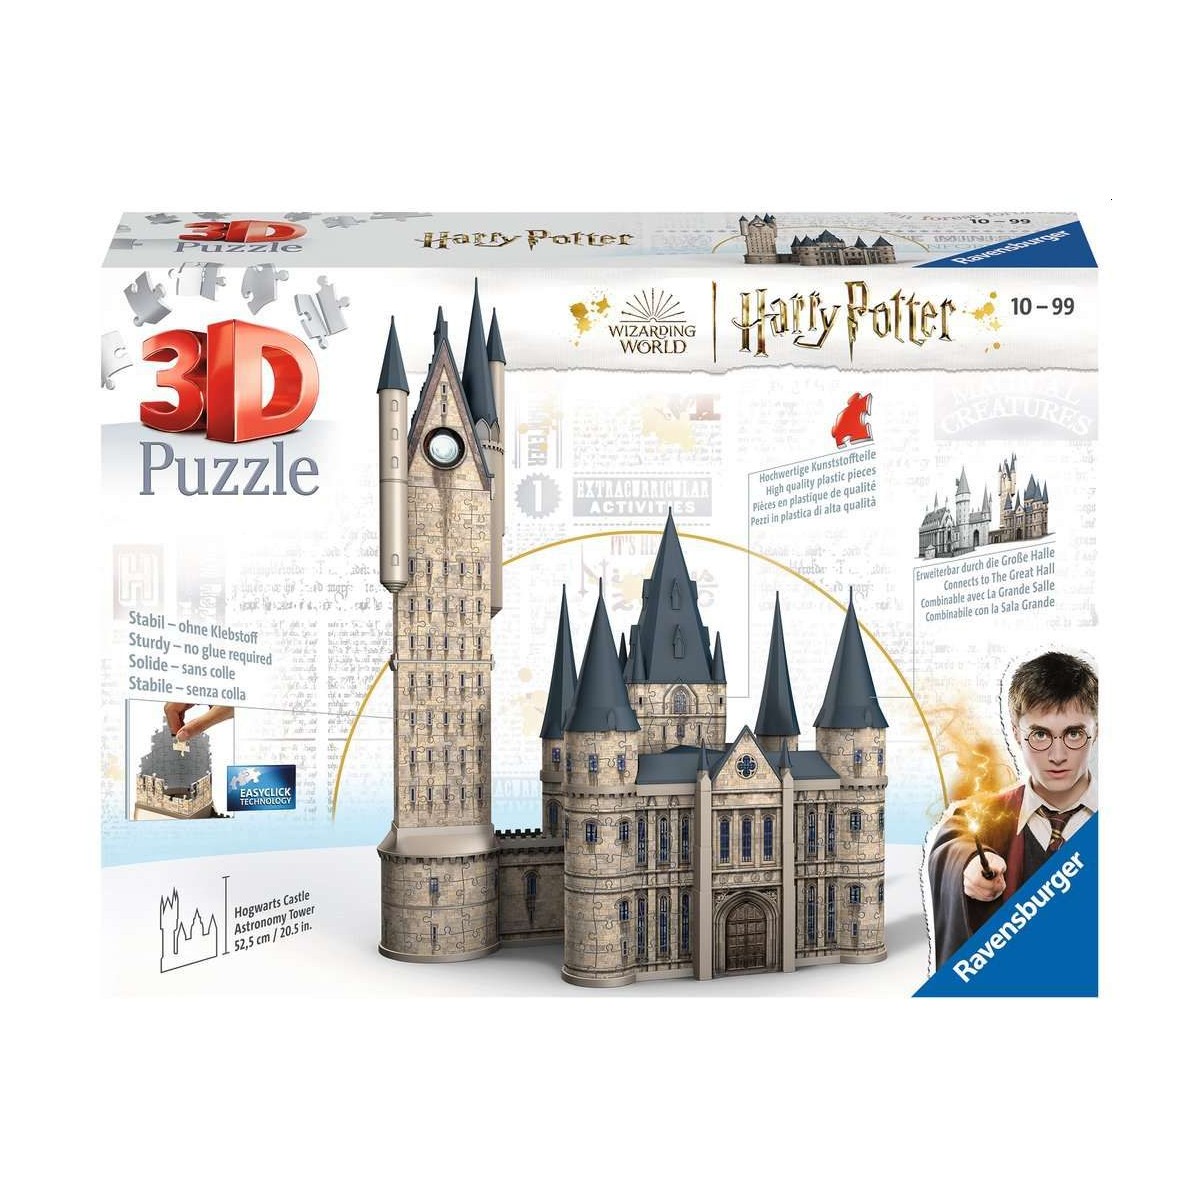 Ravensburger - Harry Potter Hogwarts Schloss - Astronomieturm